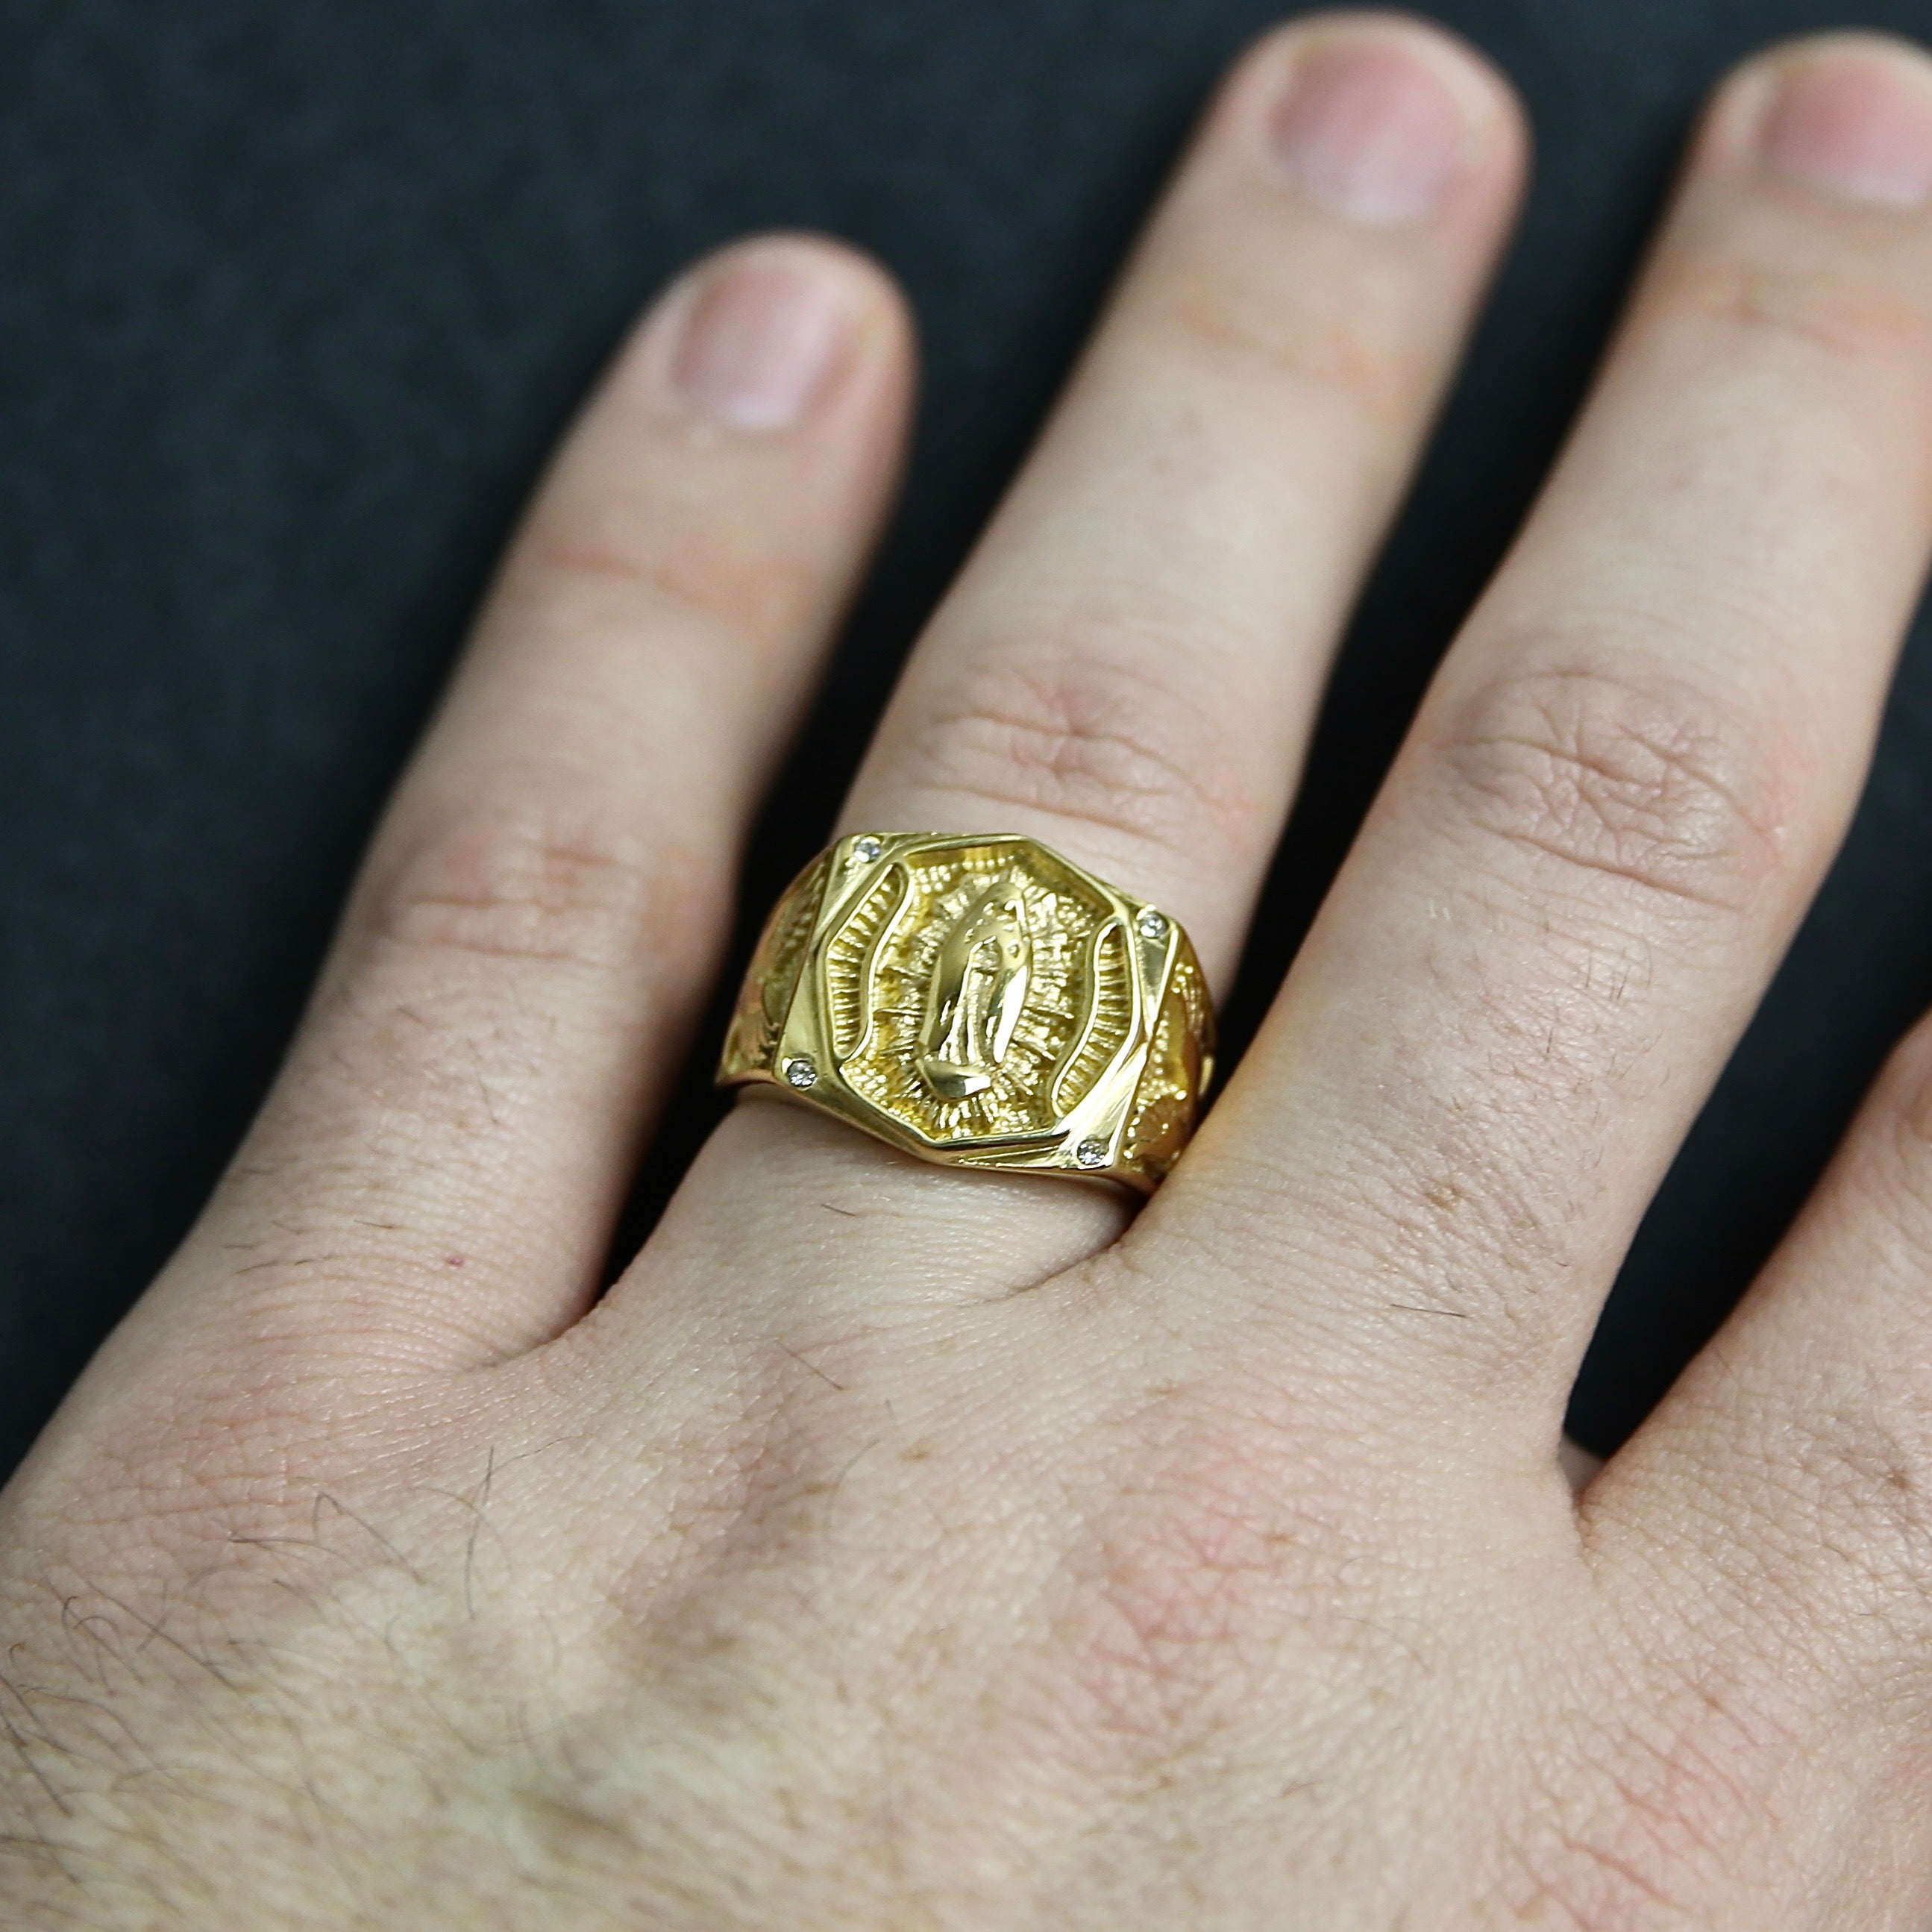 Virgin Mary Ring - Gold